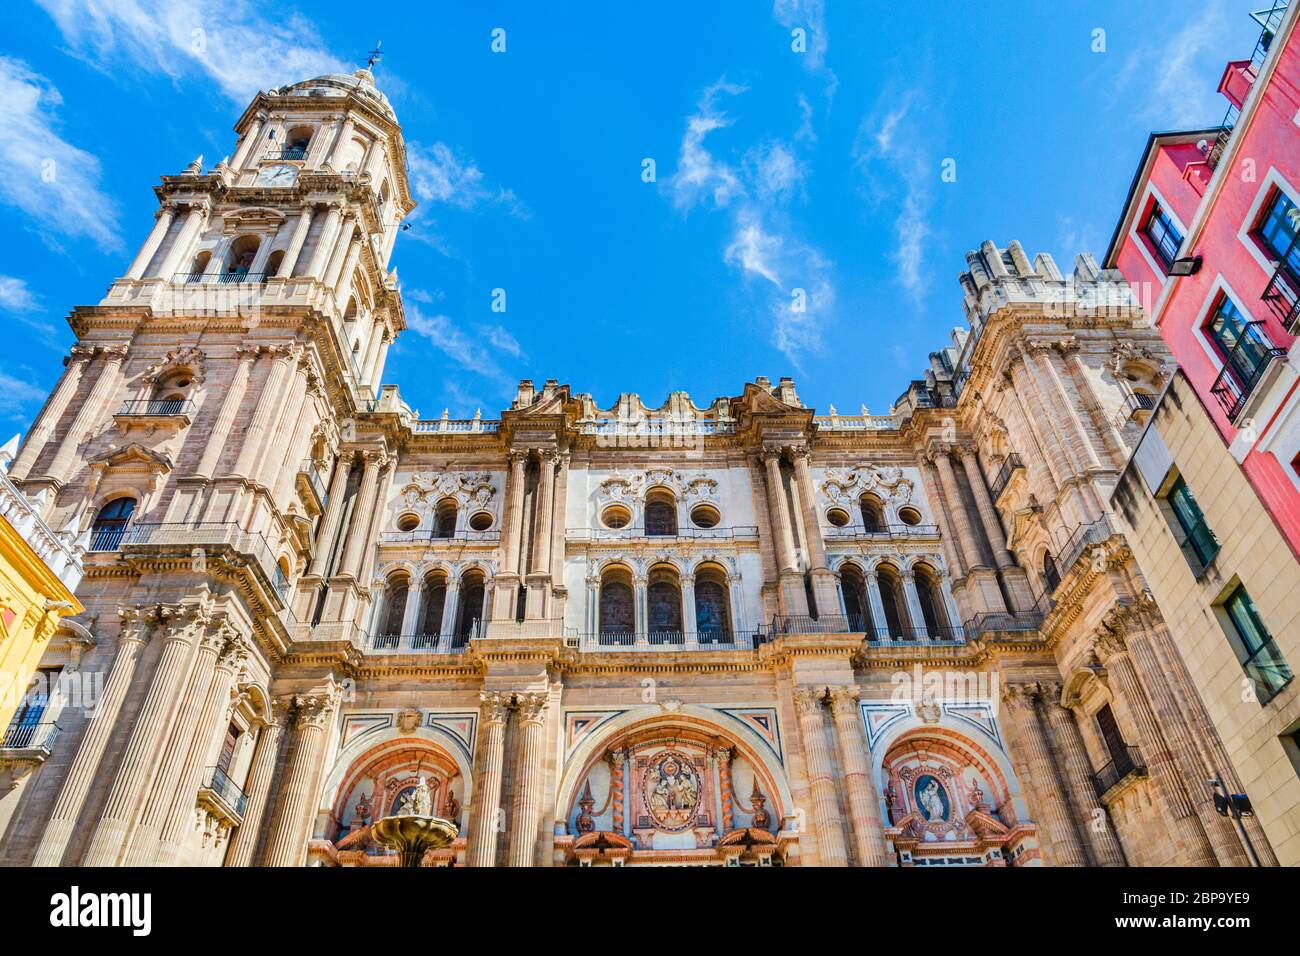 Malaga, Espagne : façade de la cathédrale de Malaga, vue vers le haut. Banque D'Images